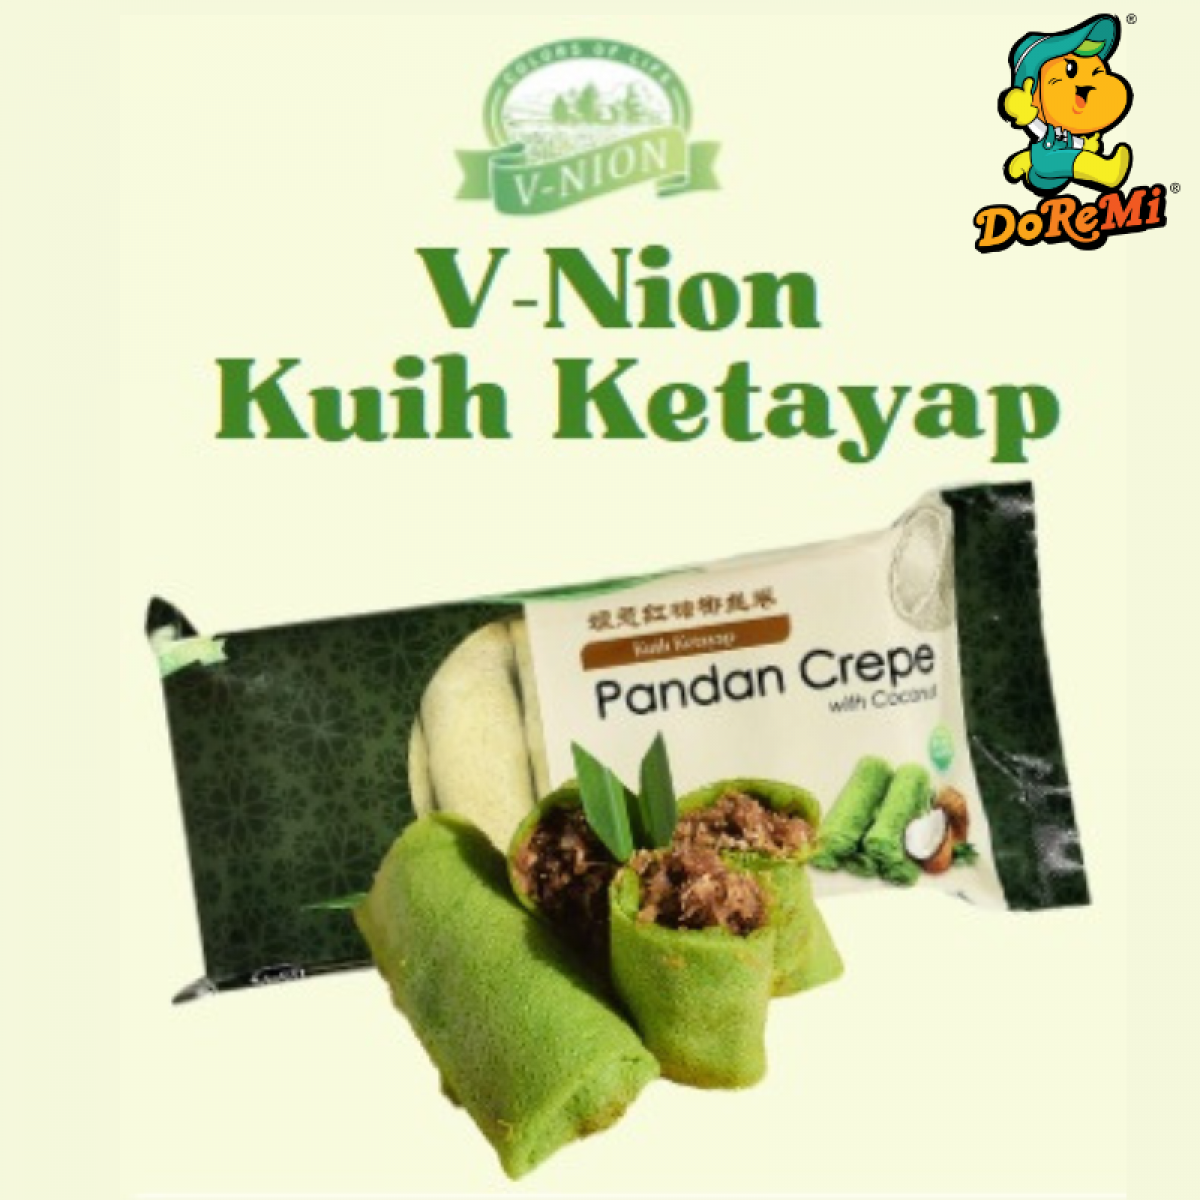 V-Nion Pandan Crepe With Coconut Cake/Kuih Ketayap (6PCS/12PCS)